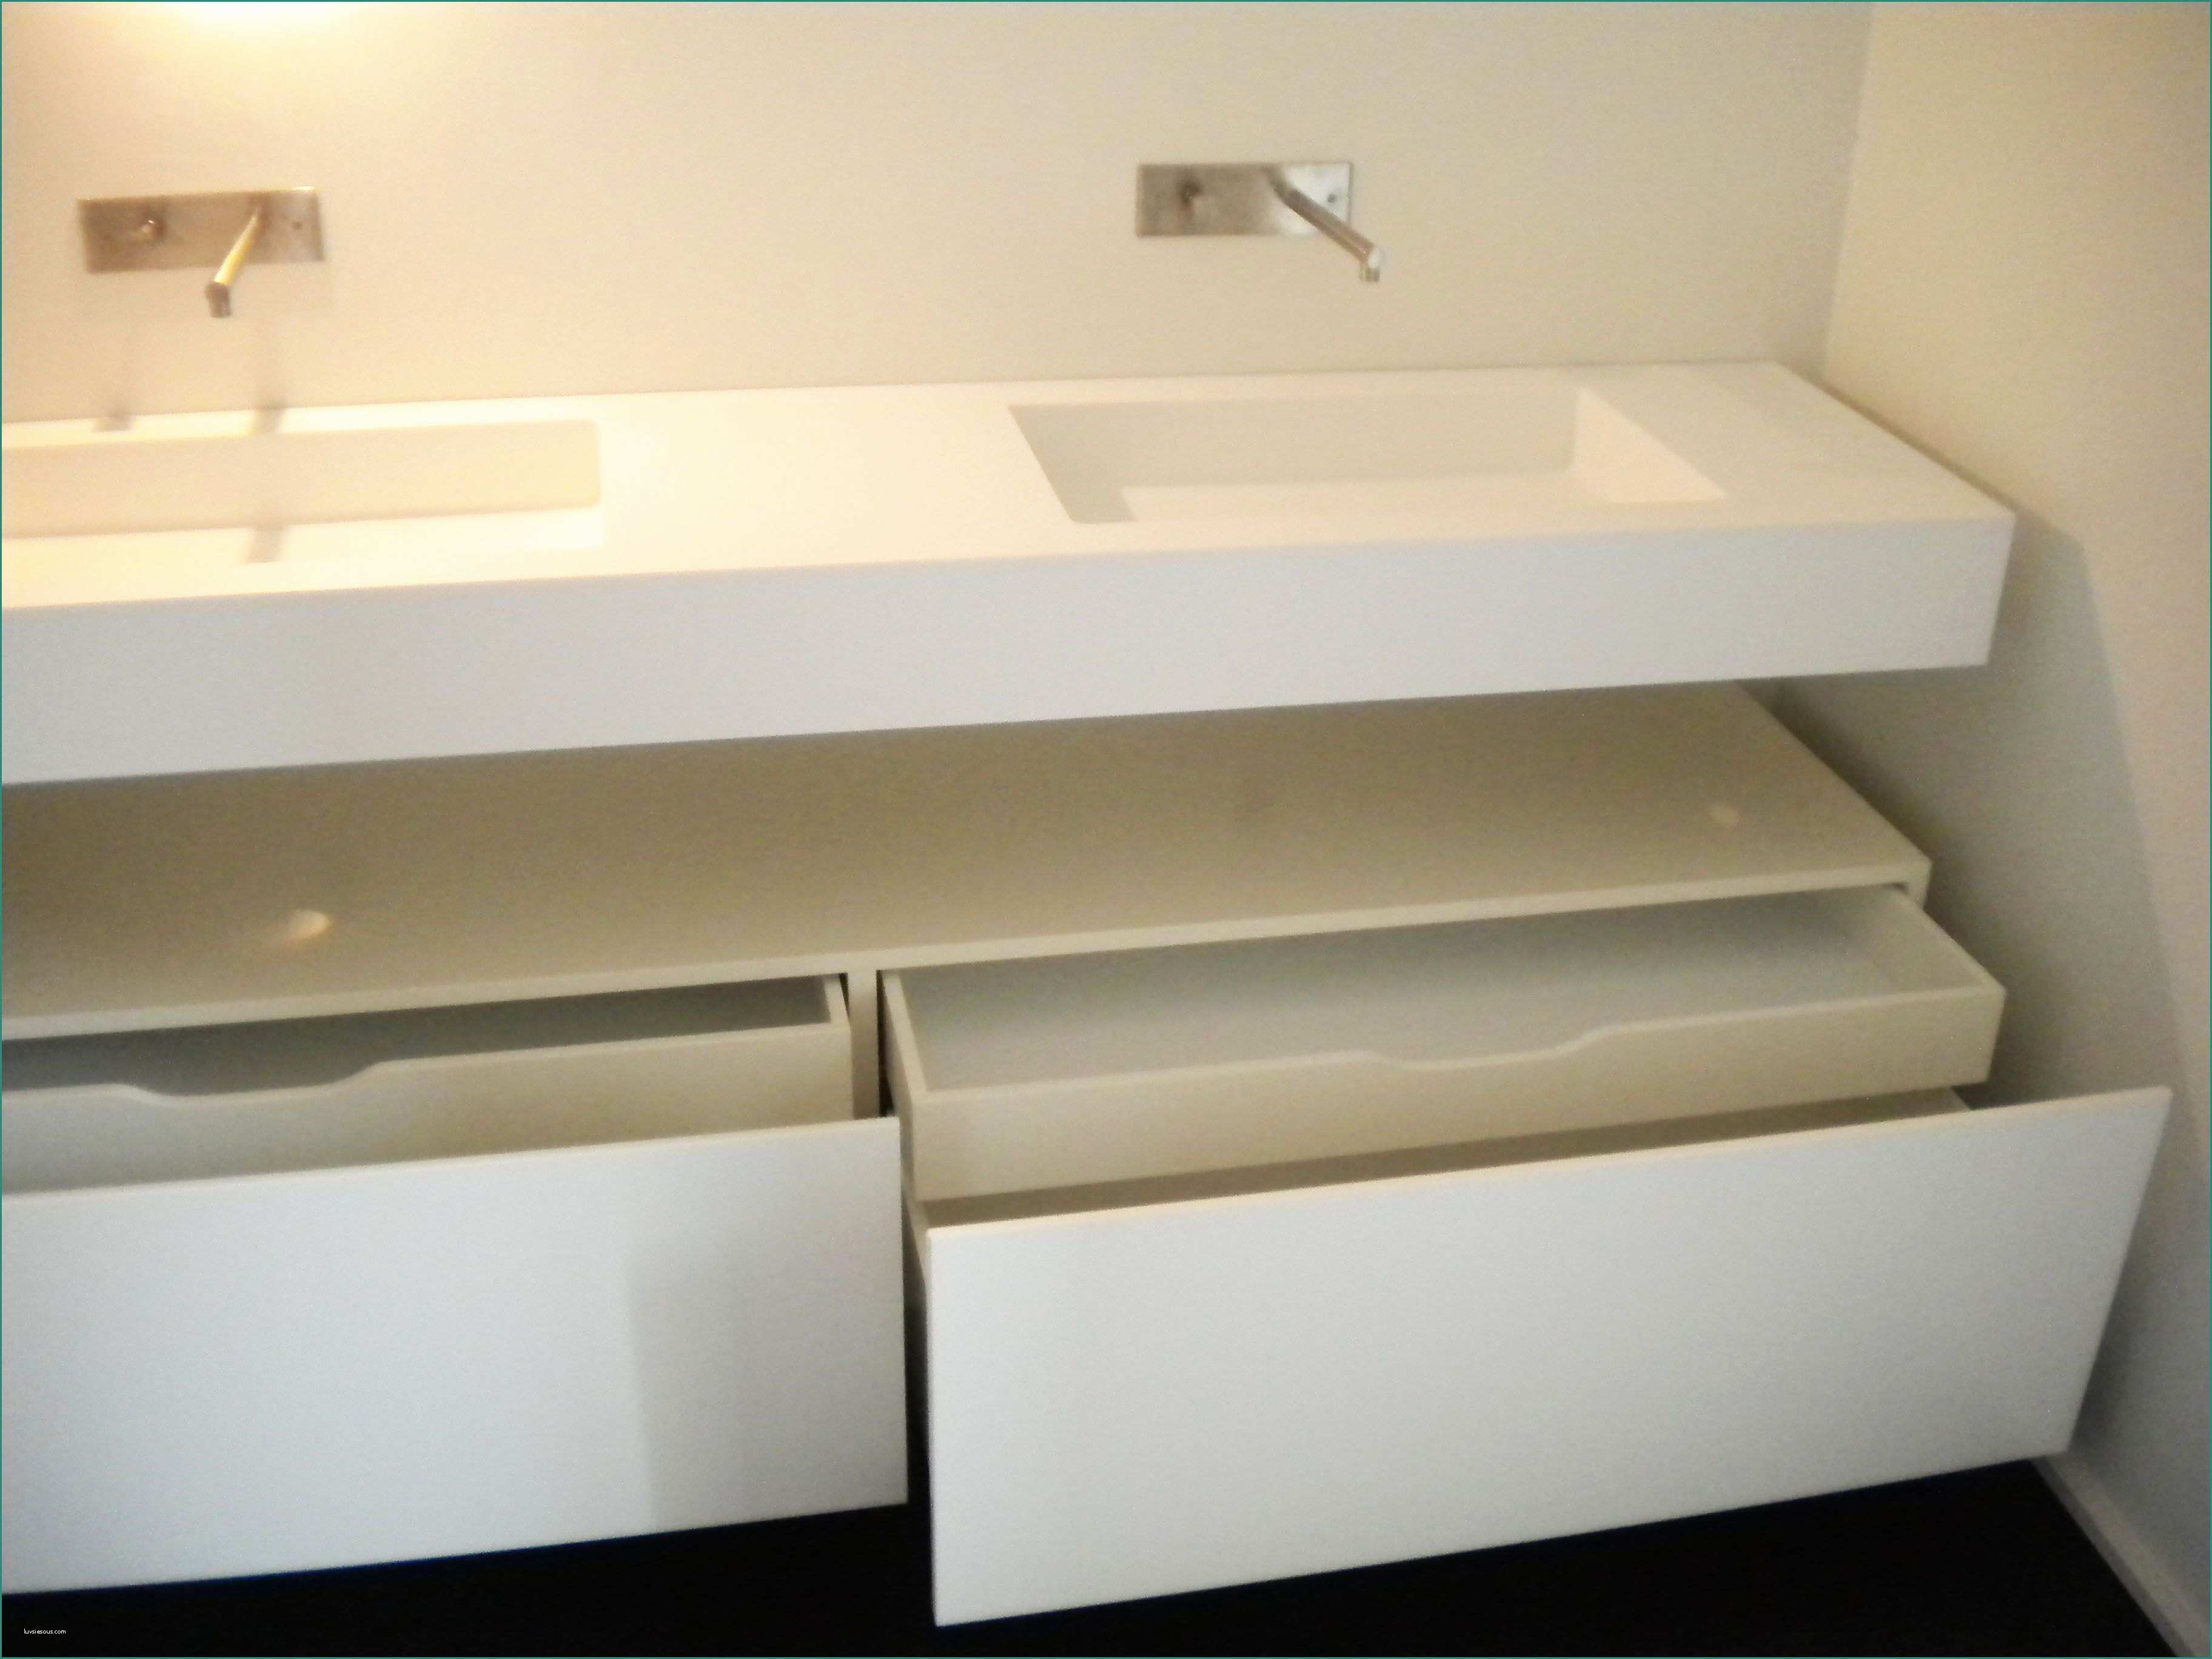 Pedane Legno Ikea E 47 Reference Box Doccia Da Ikea – Design Per La Casa